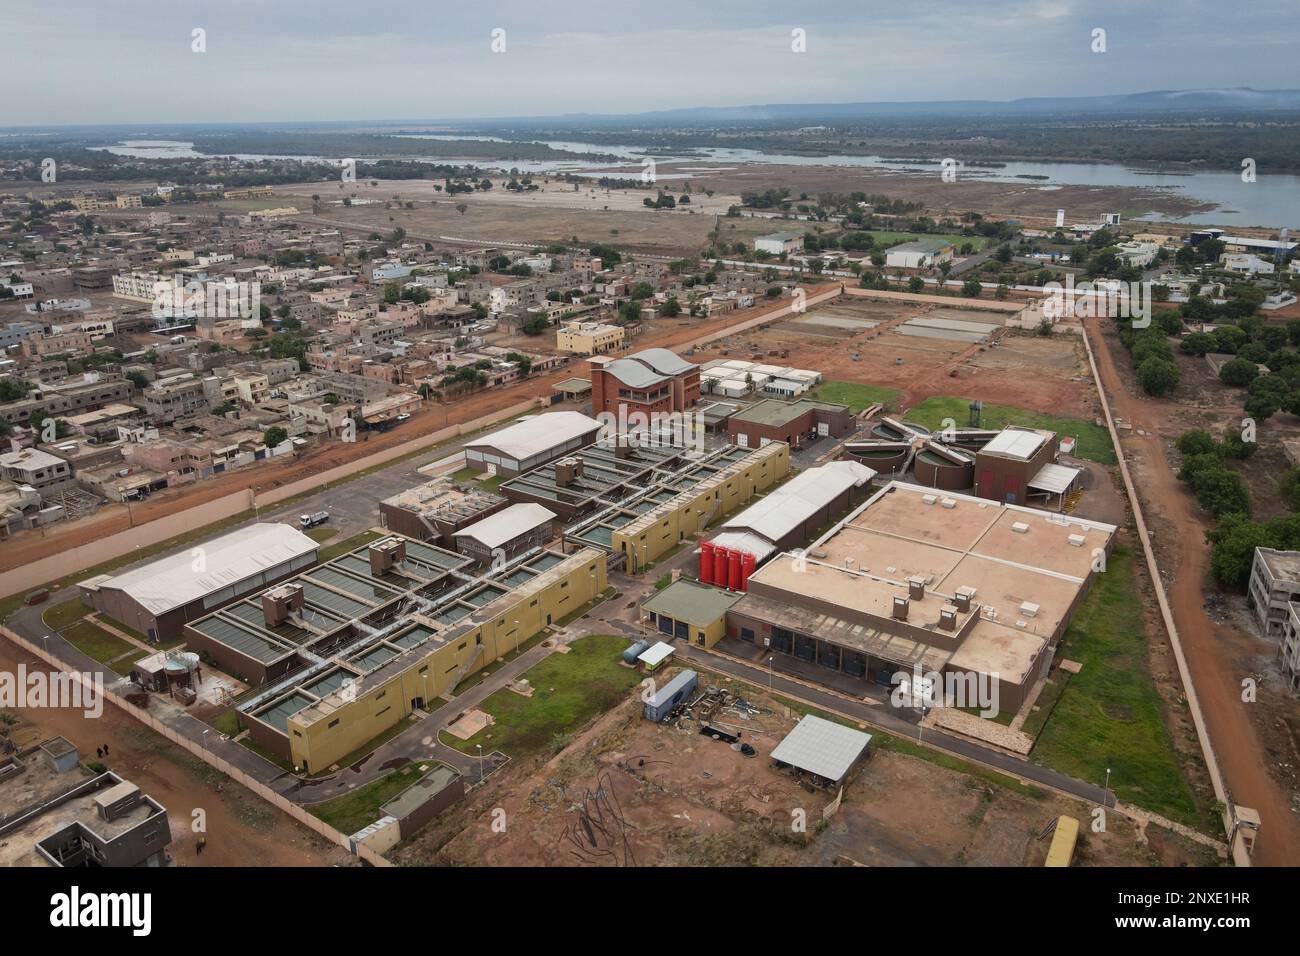 Nicolas Remene / Le Pictorium - Wasseraufbereitungsanlage für den Fluss Kabala Niger. - 19/5/2021 - Mali / Bamako District / Bamako - Luftaufnahme des Kab Stockfoto